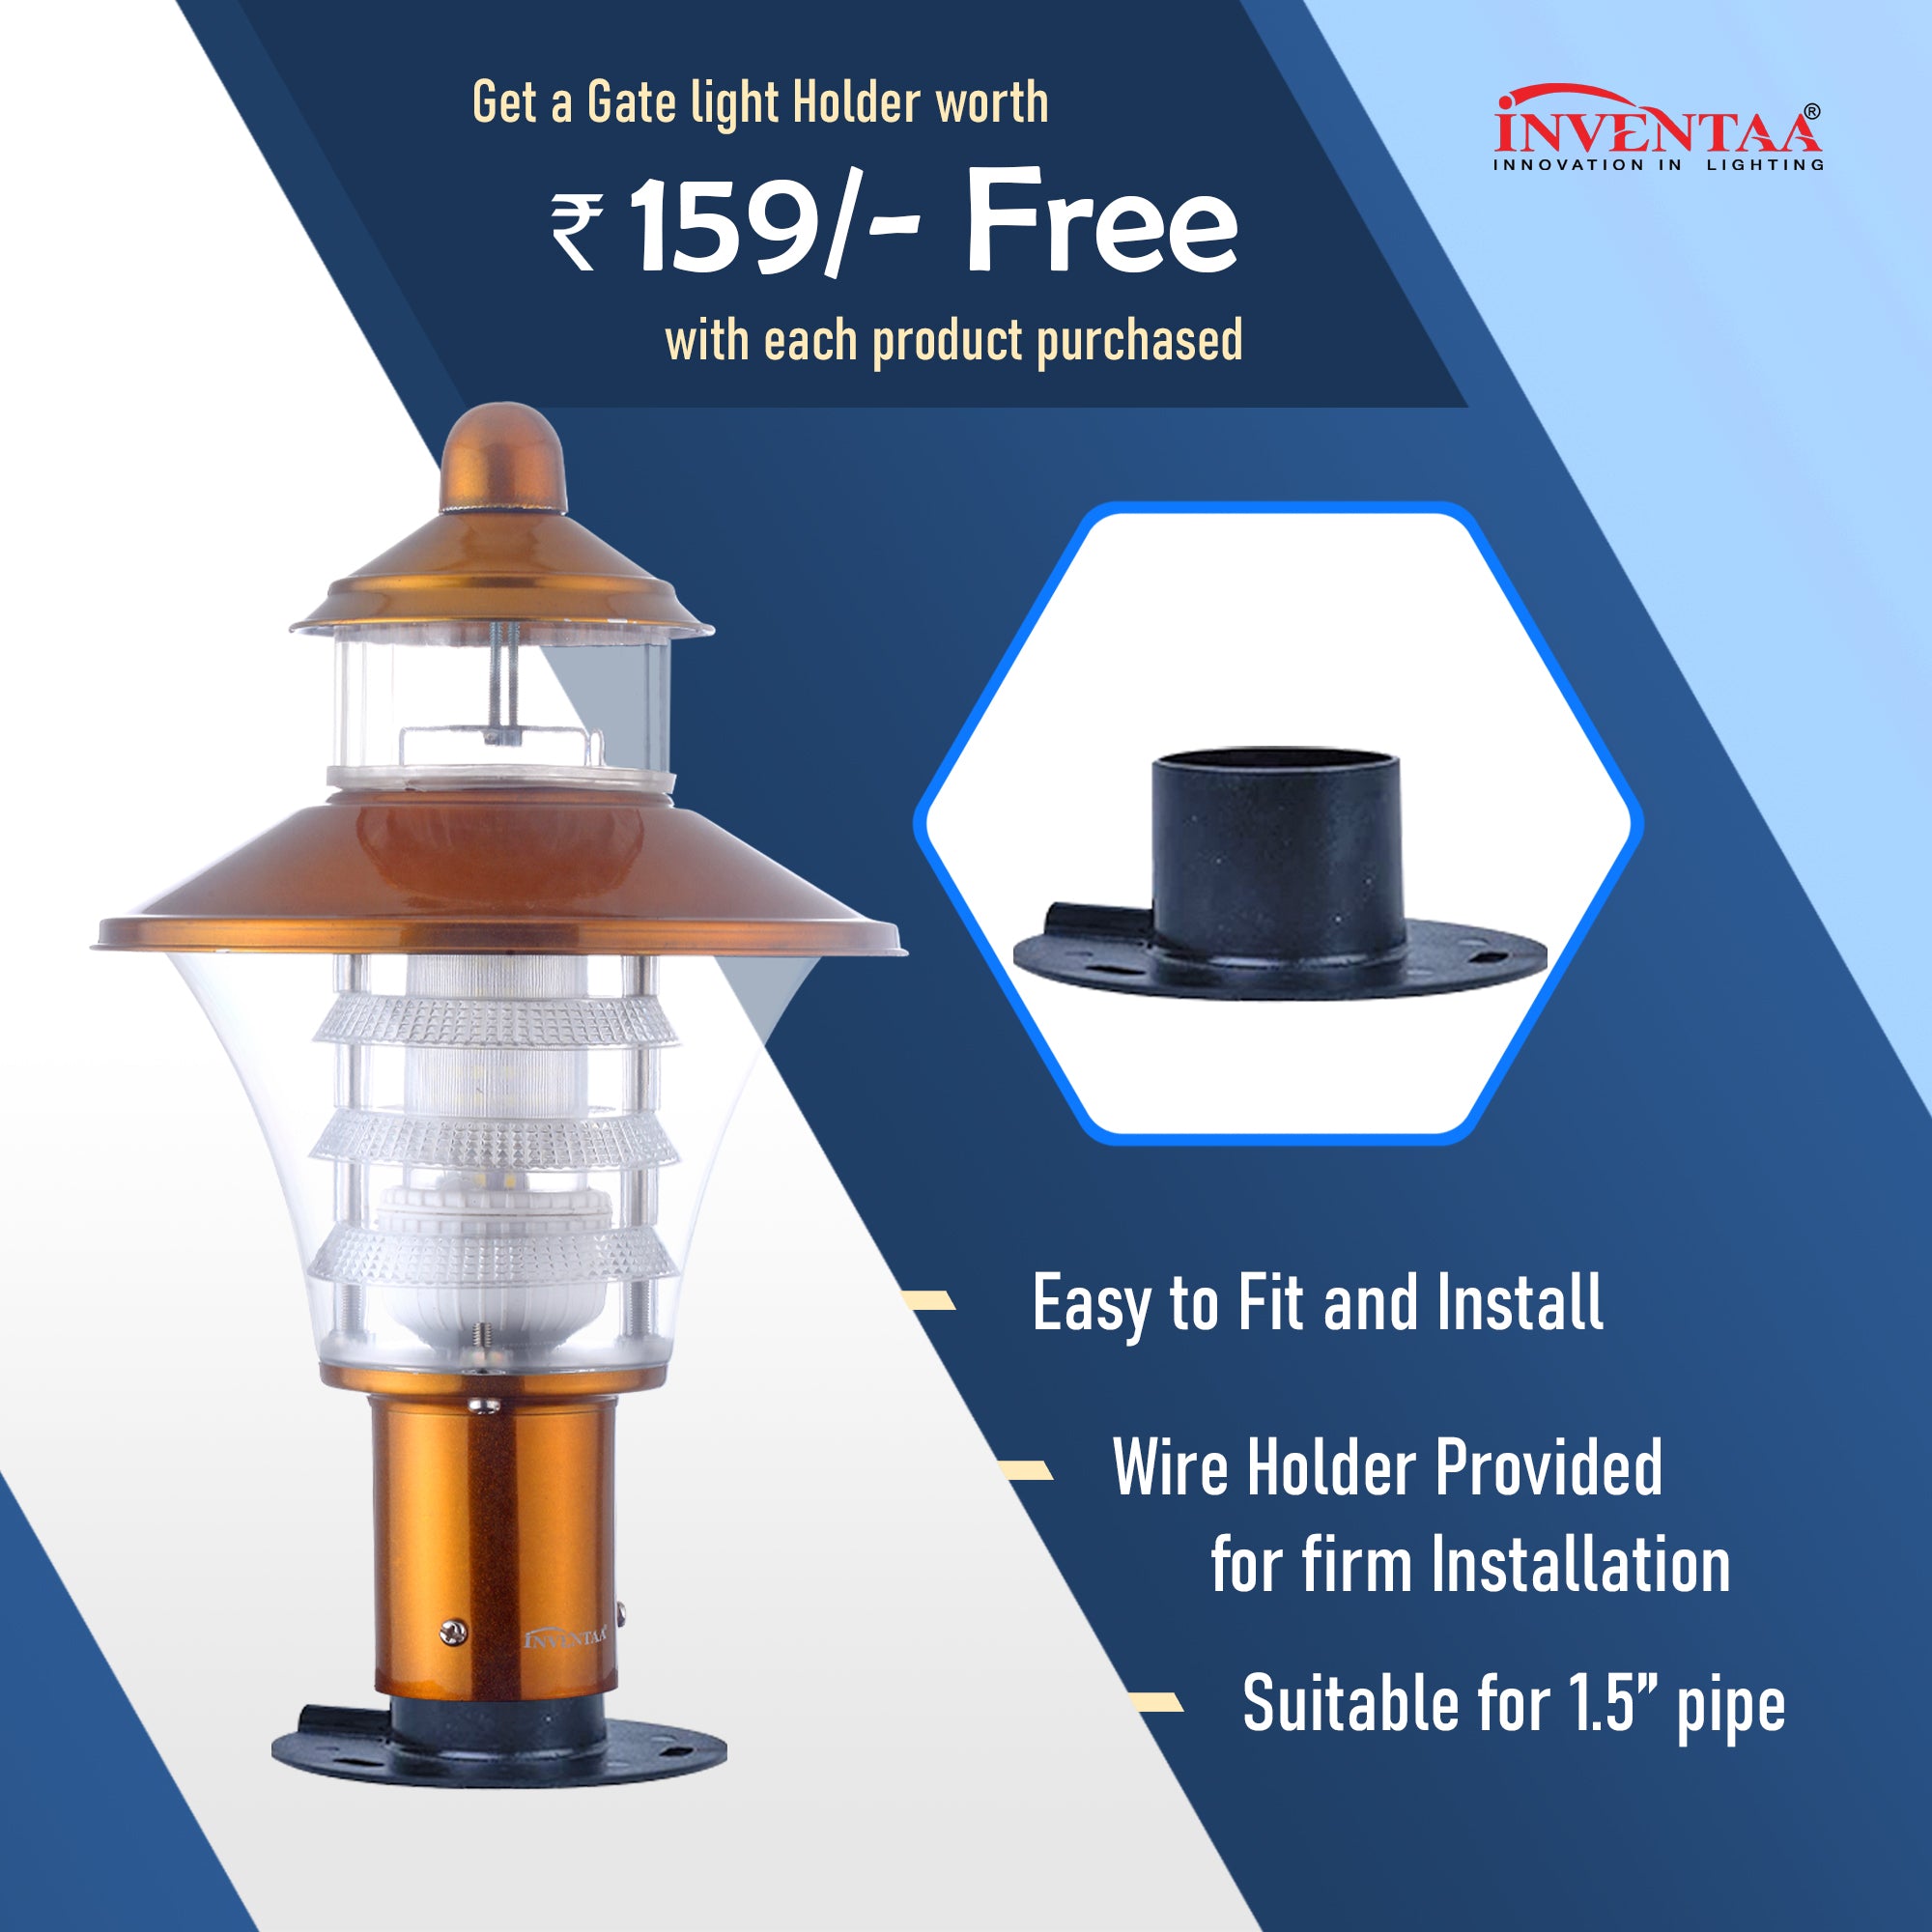 Free LED Gate Light Holder For Viva LH Matt Black | Best LED Gate Light Model Online at affordable price Online  #color_Matt Black White